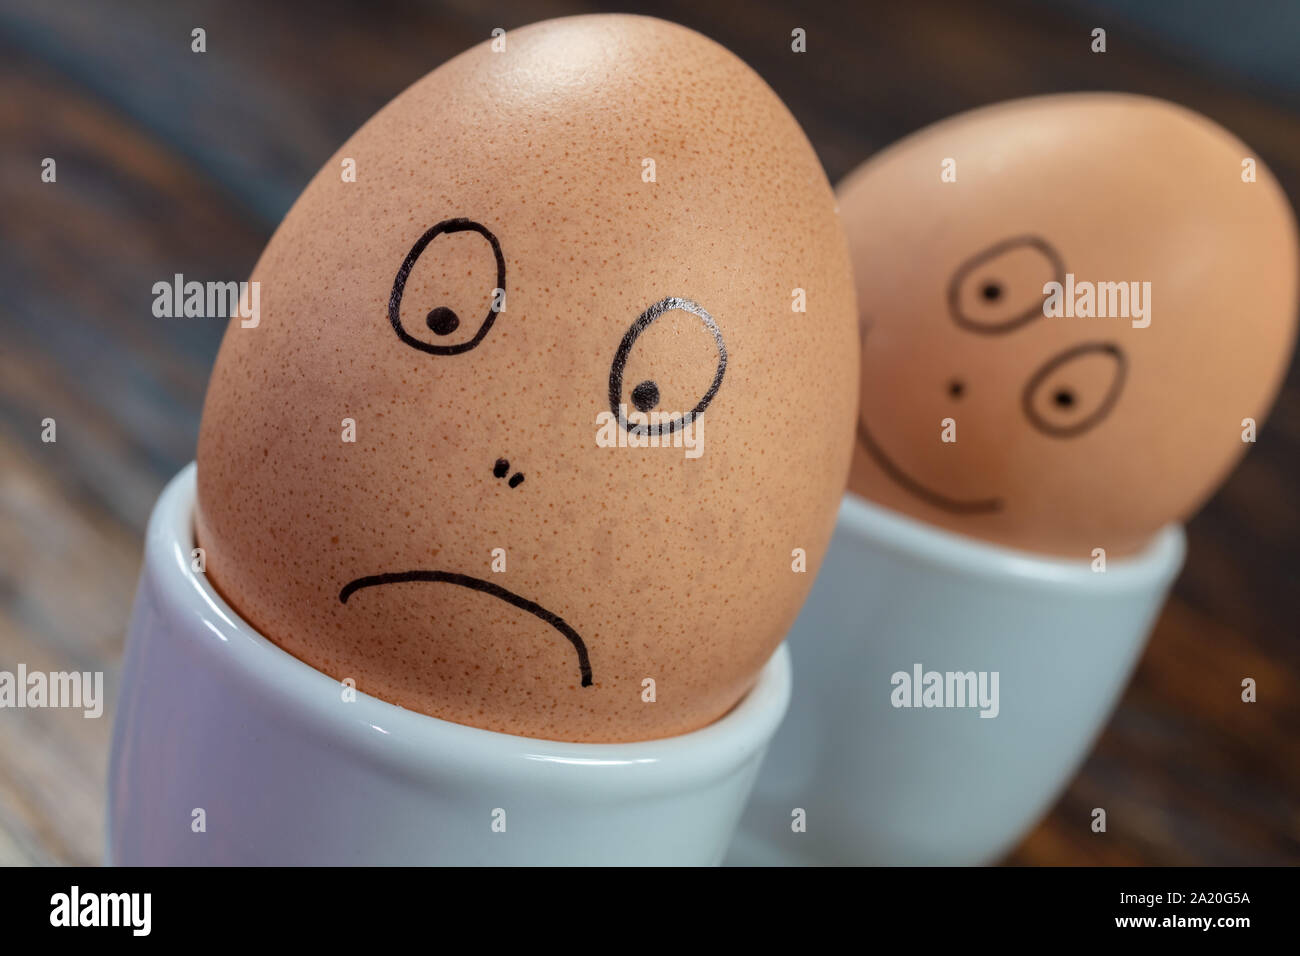 Emozioni concetto due uova sode in bianco d'uovo con coppe disegnate felici e tristi si affaccia su di un tavolo di legno Foto Stock